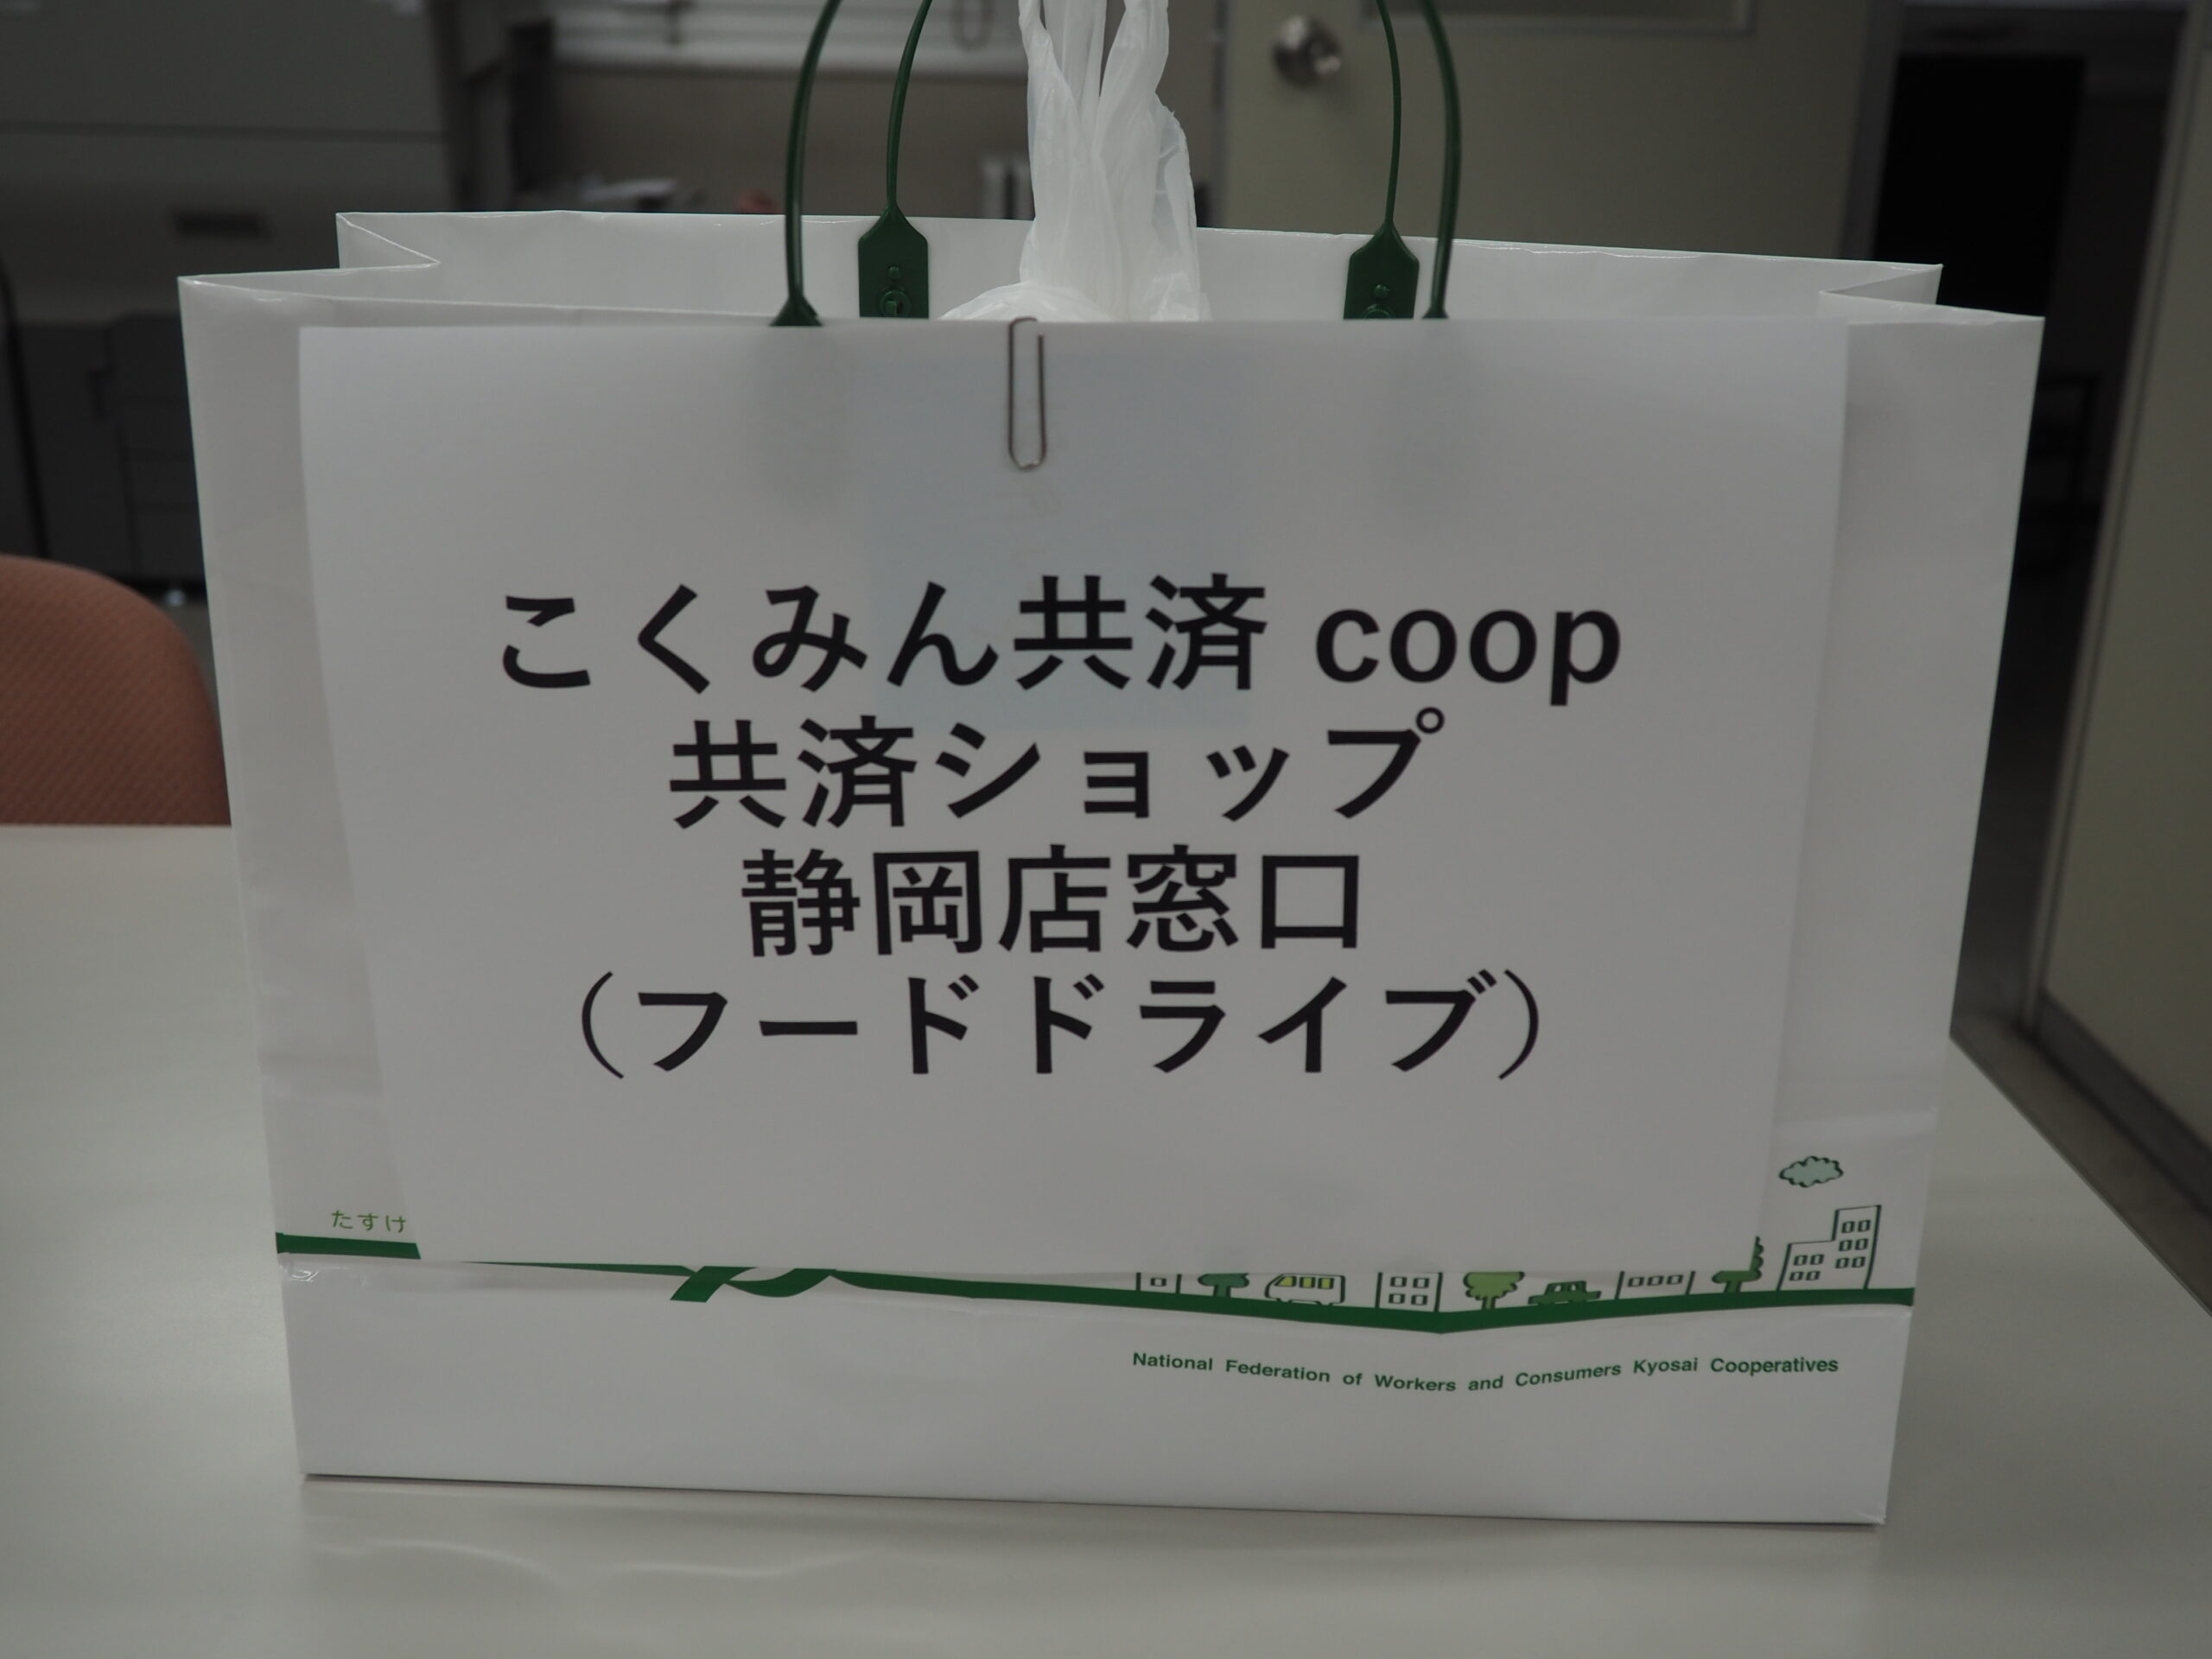 こくみん共済coop共済ショップ静岡店様・清水地区労働者福祉協議会様から食品を提供いただきました。